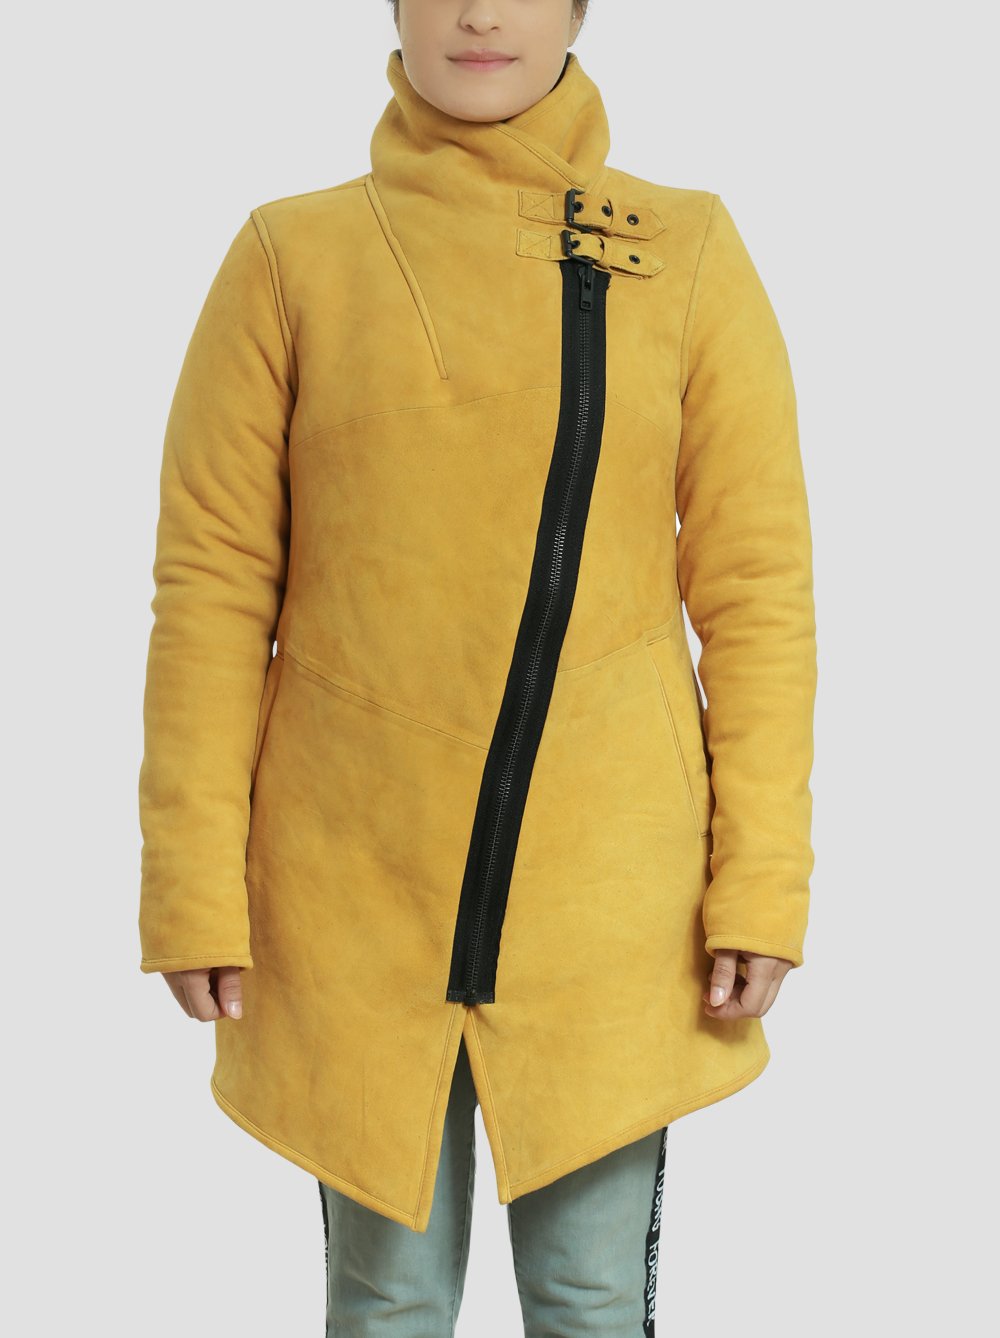 Sheila Sheepskin Leather Shearling Yellow Coat for Women